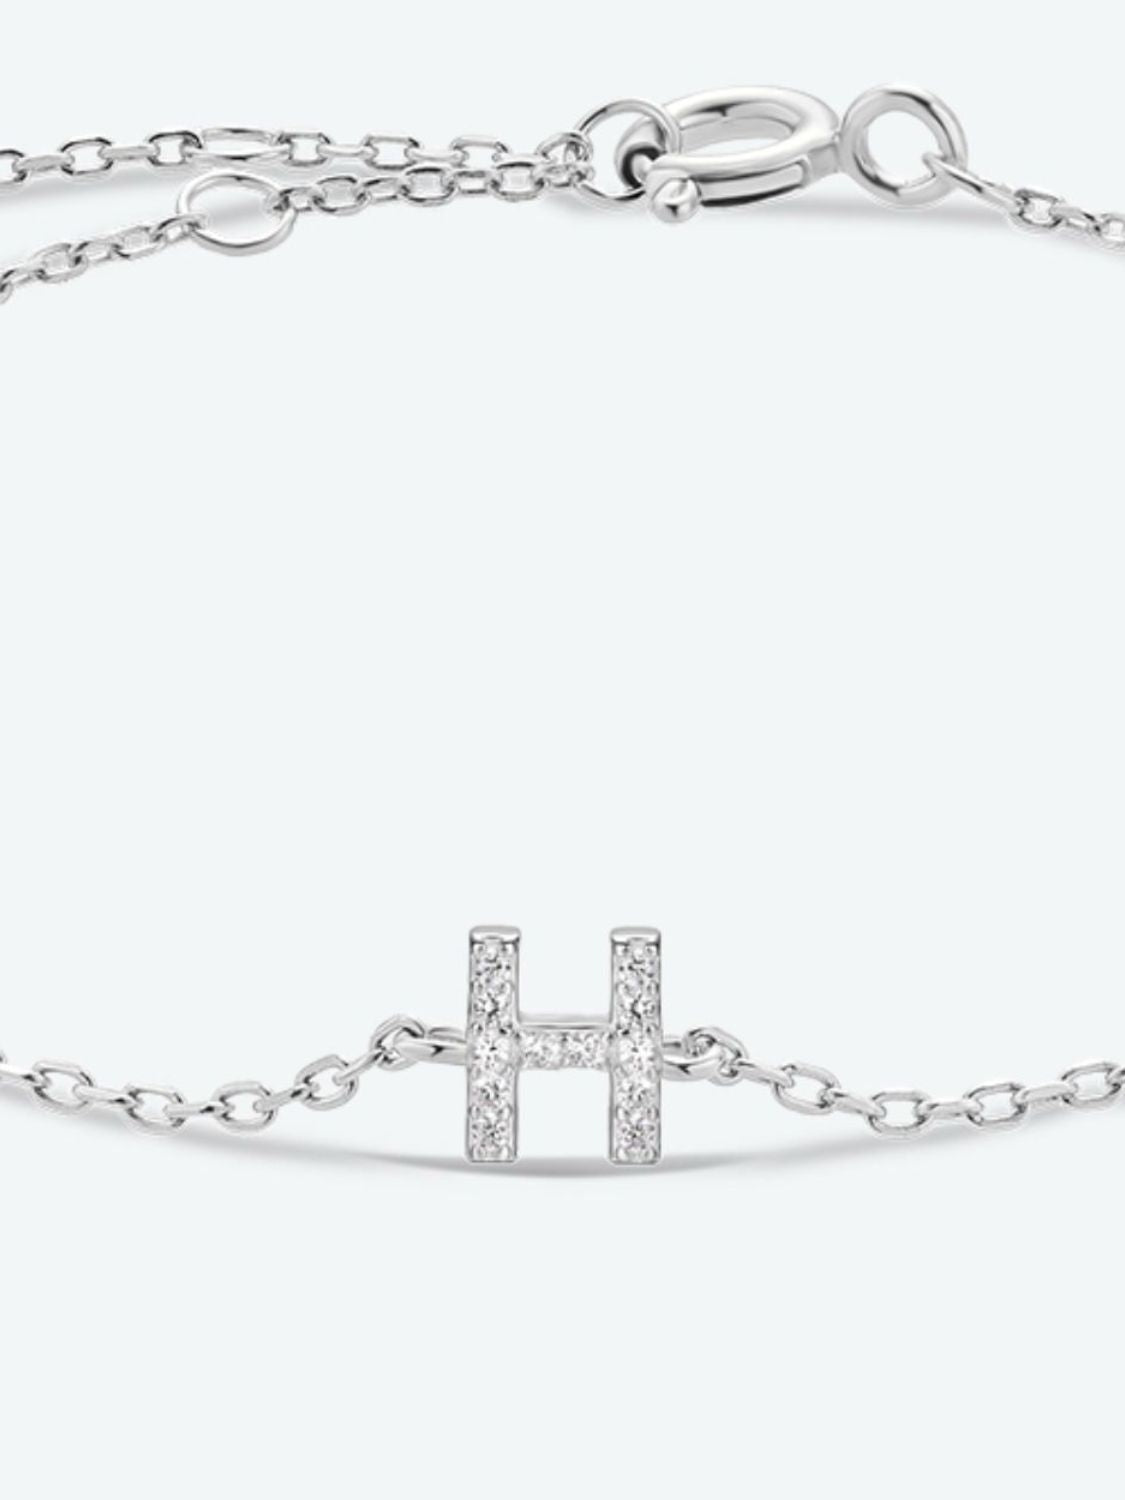 Zircon 925 Sterling Silver Bracelet - Women’s Jewelry - Bracelets - 11 - 2024